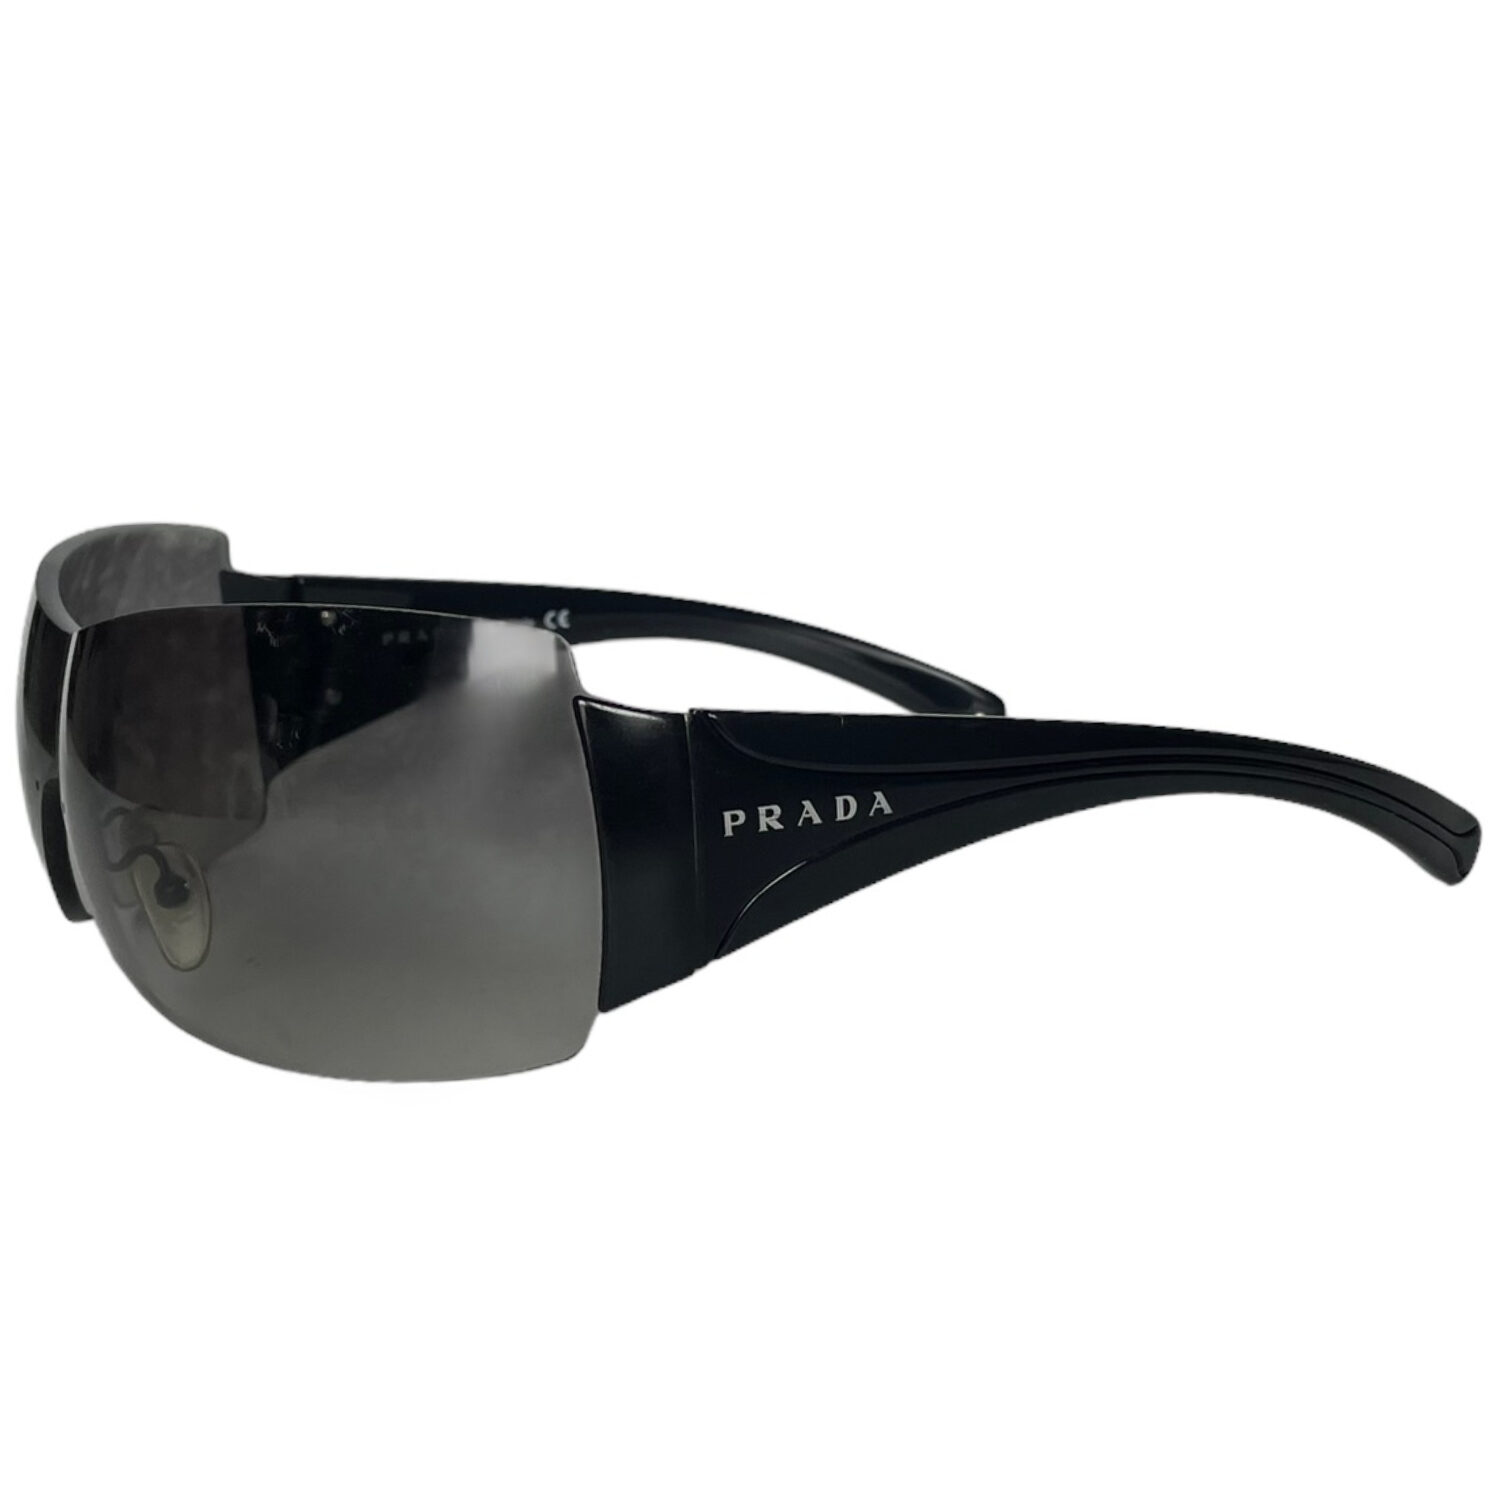 Vintage Prada Rimless Wraparound Sunglasses in Black | NITRYL